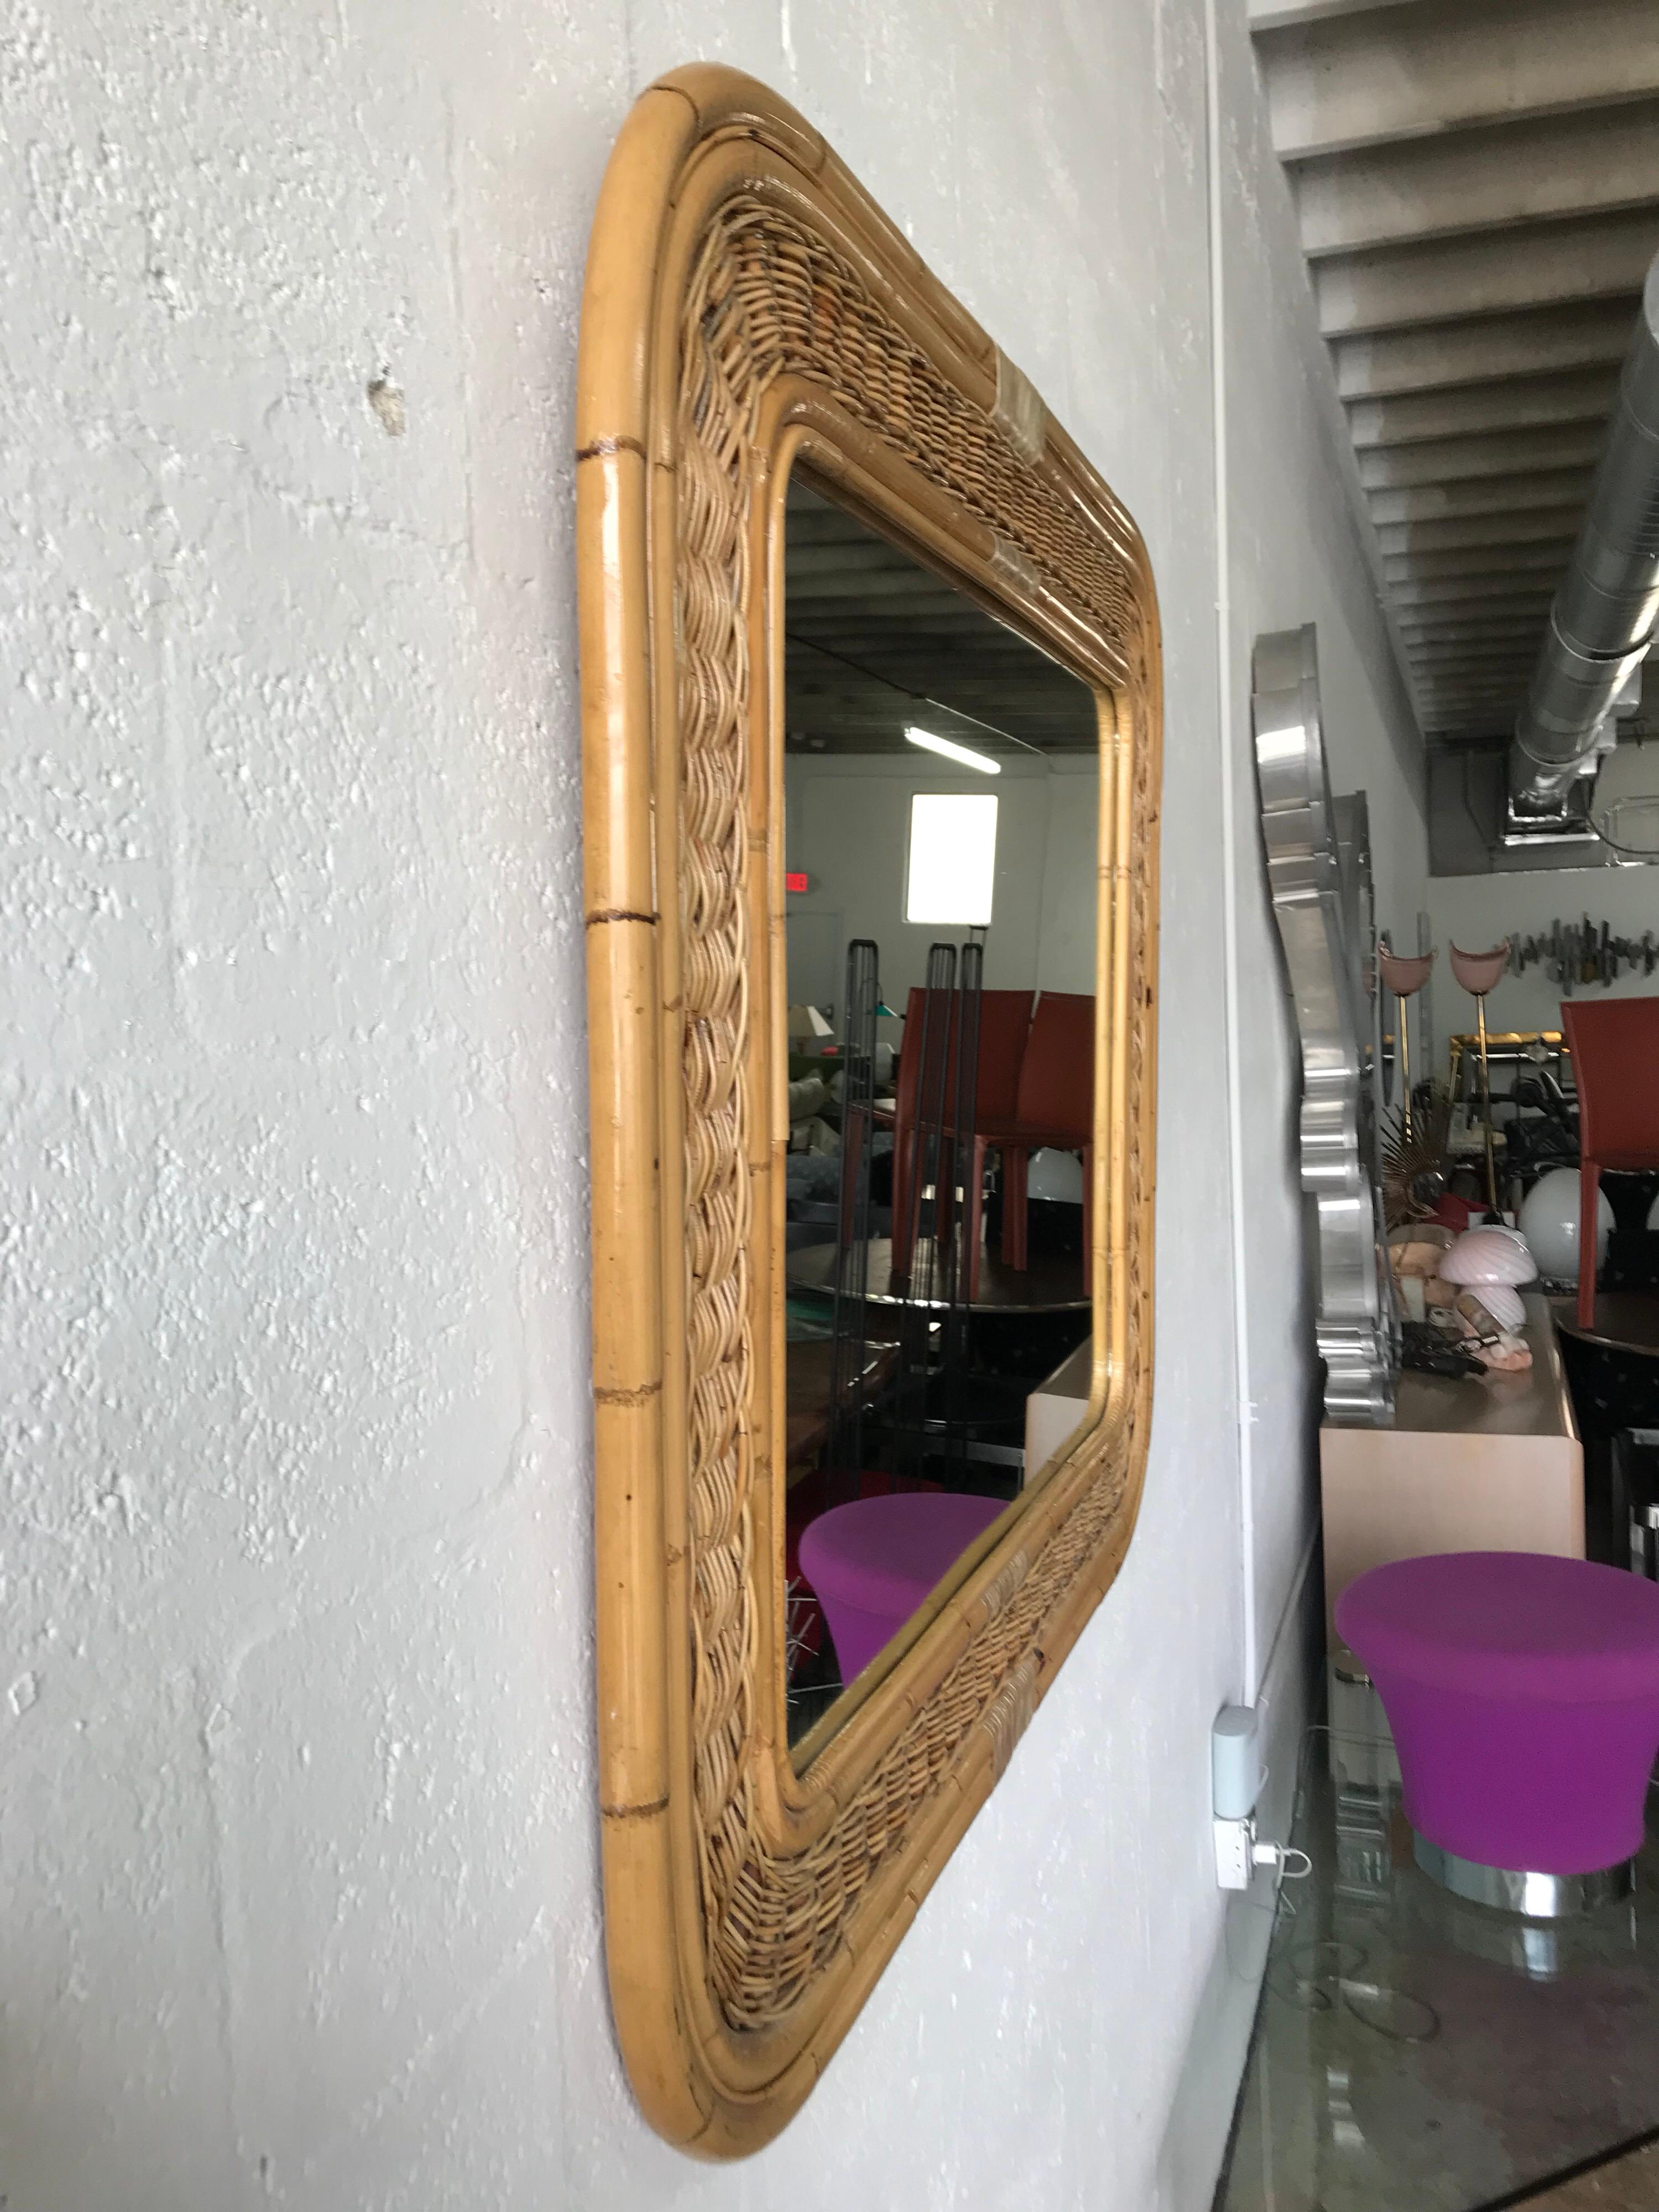 bamboo rattan mirror